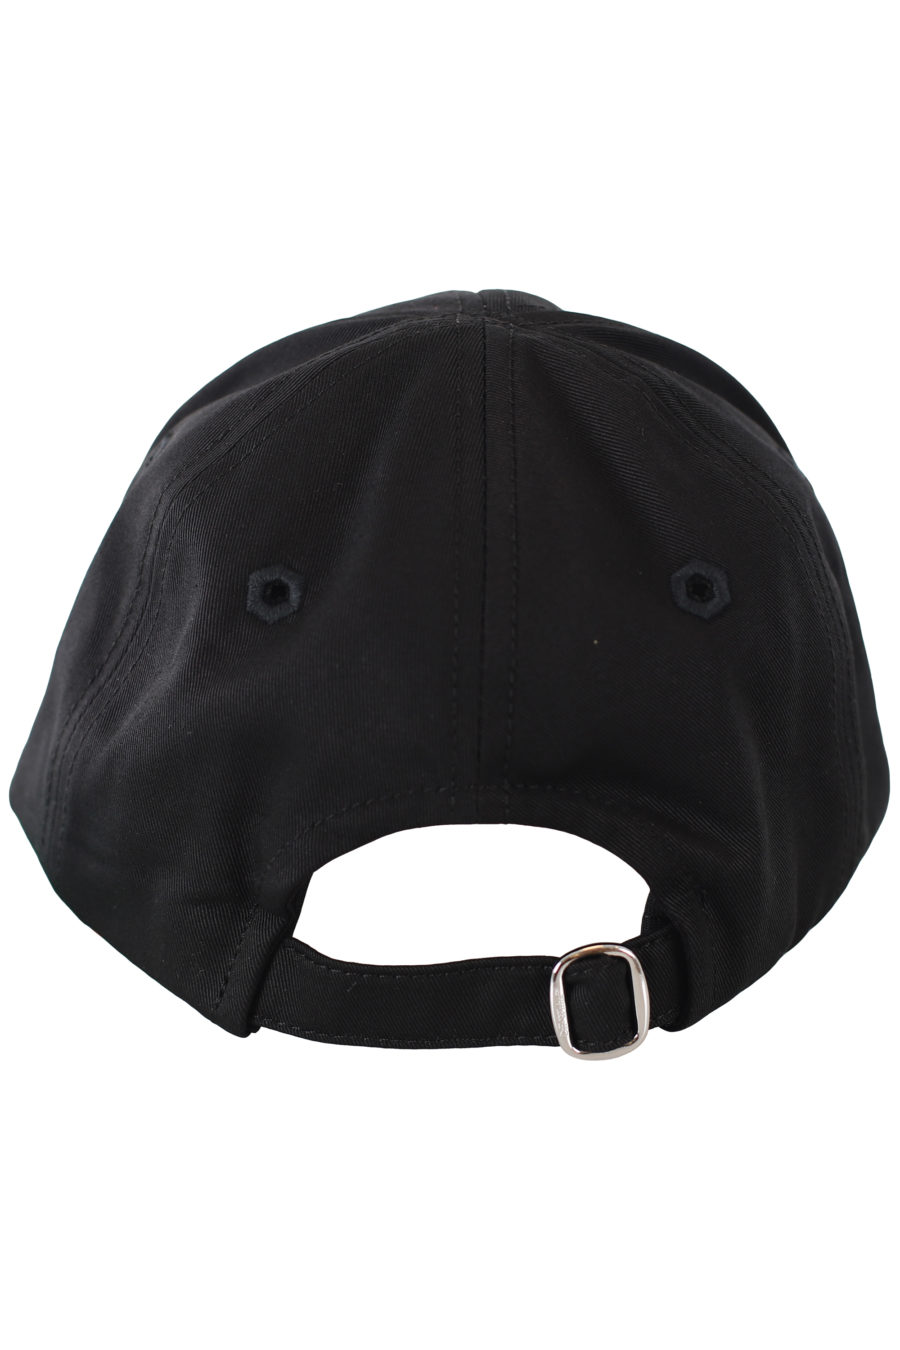 Schwarze Mütze mit gestickten Pfeilen - IMG 9393